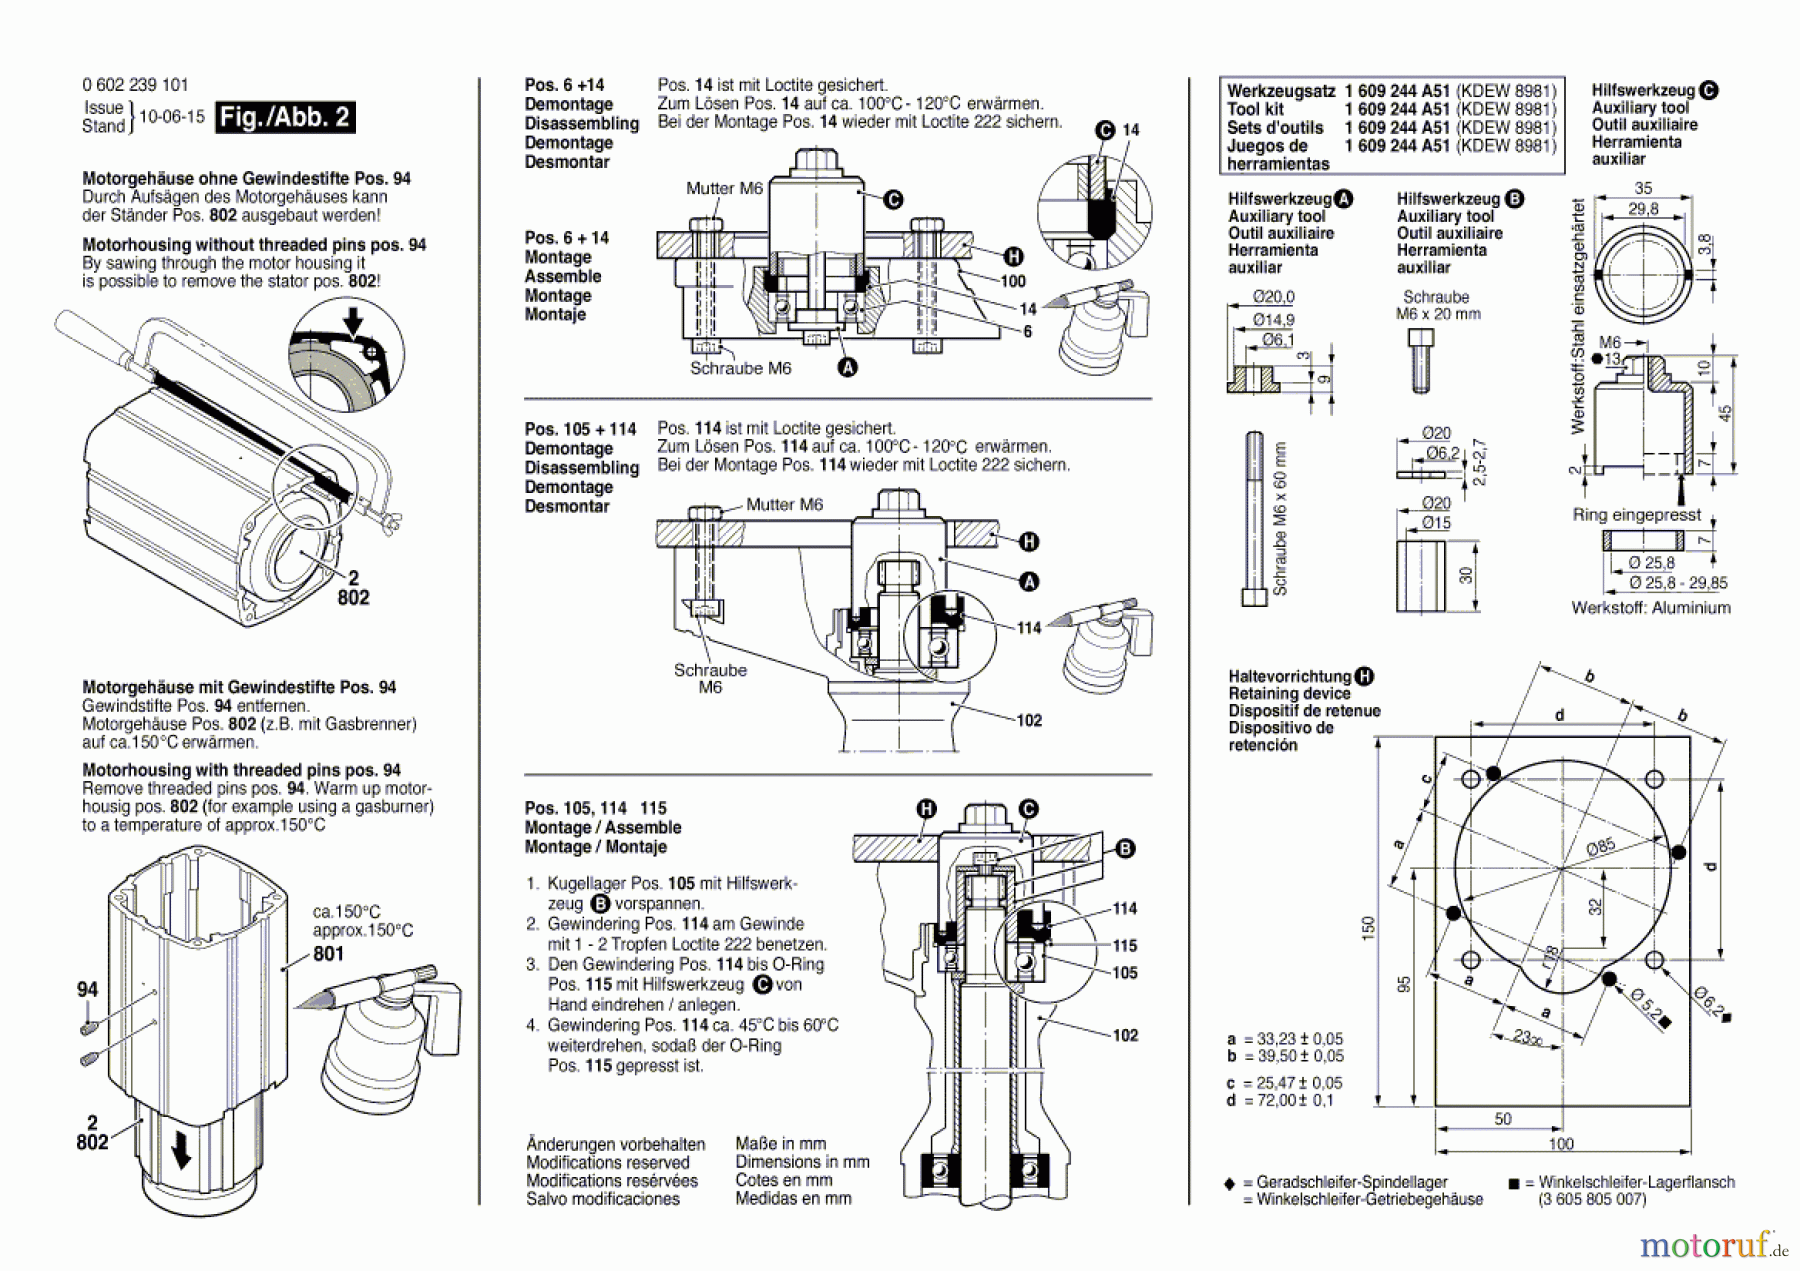  Bosch Werkzeug Hf-Geradschleifer GERADSCHLEIFER ---- Seite 2